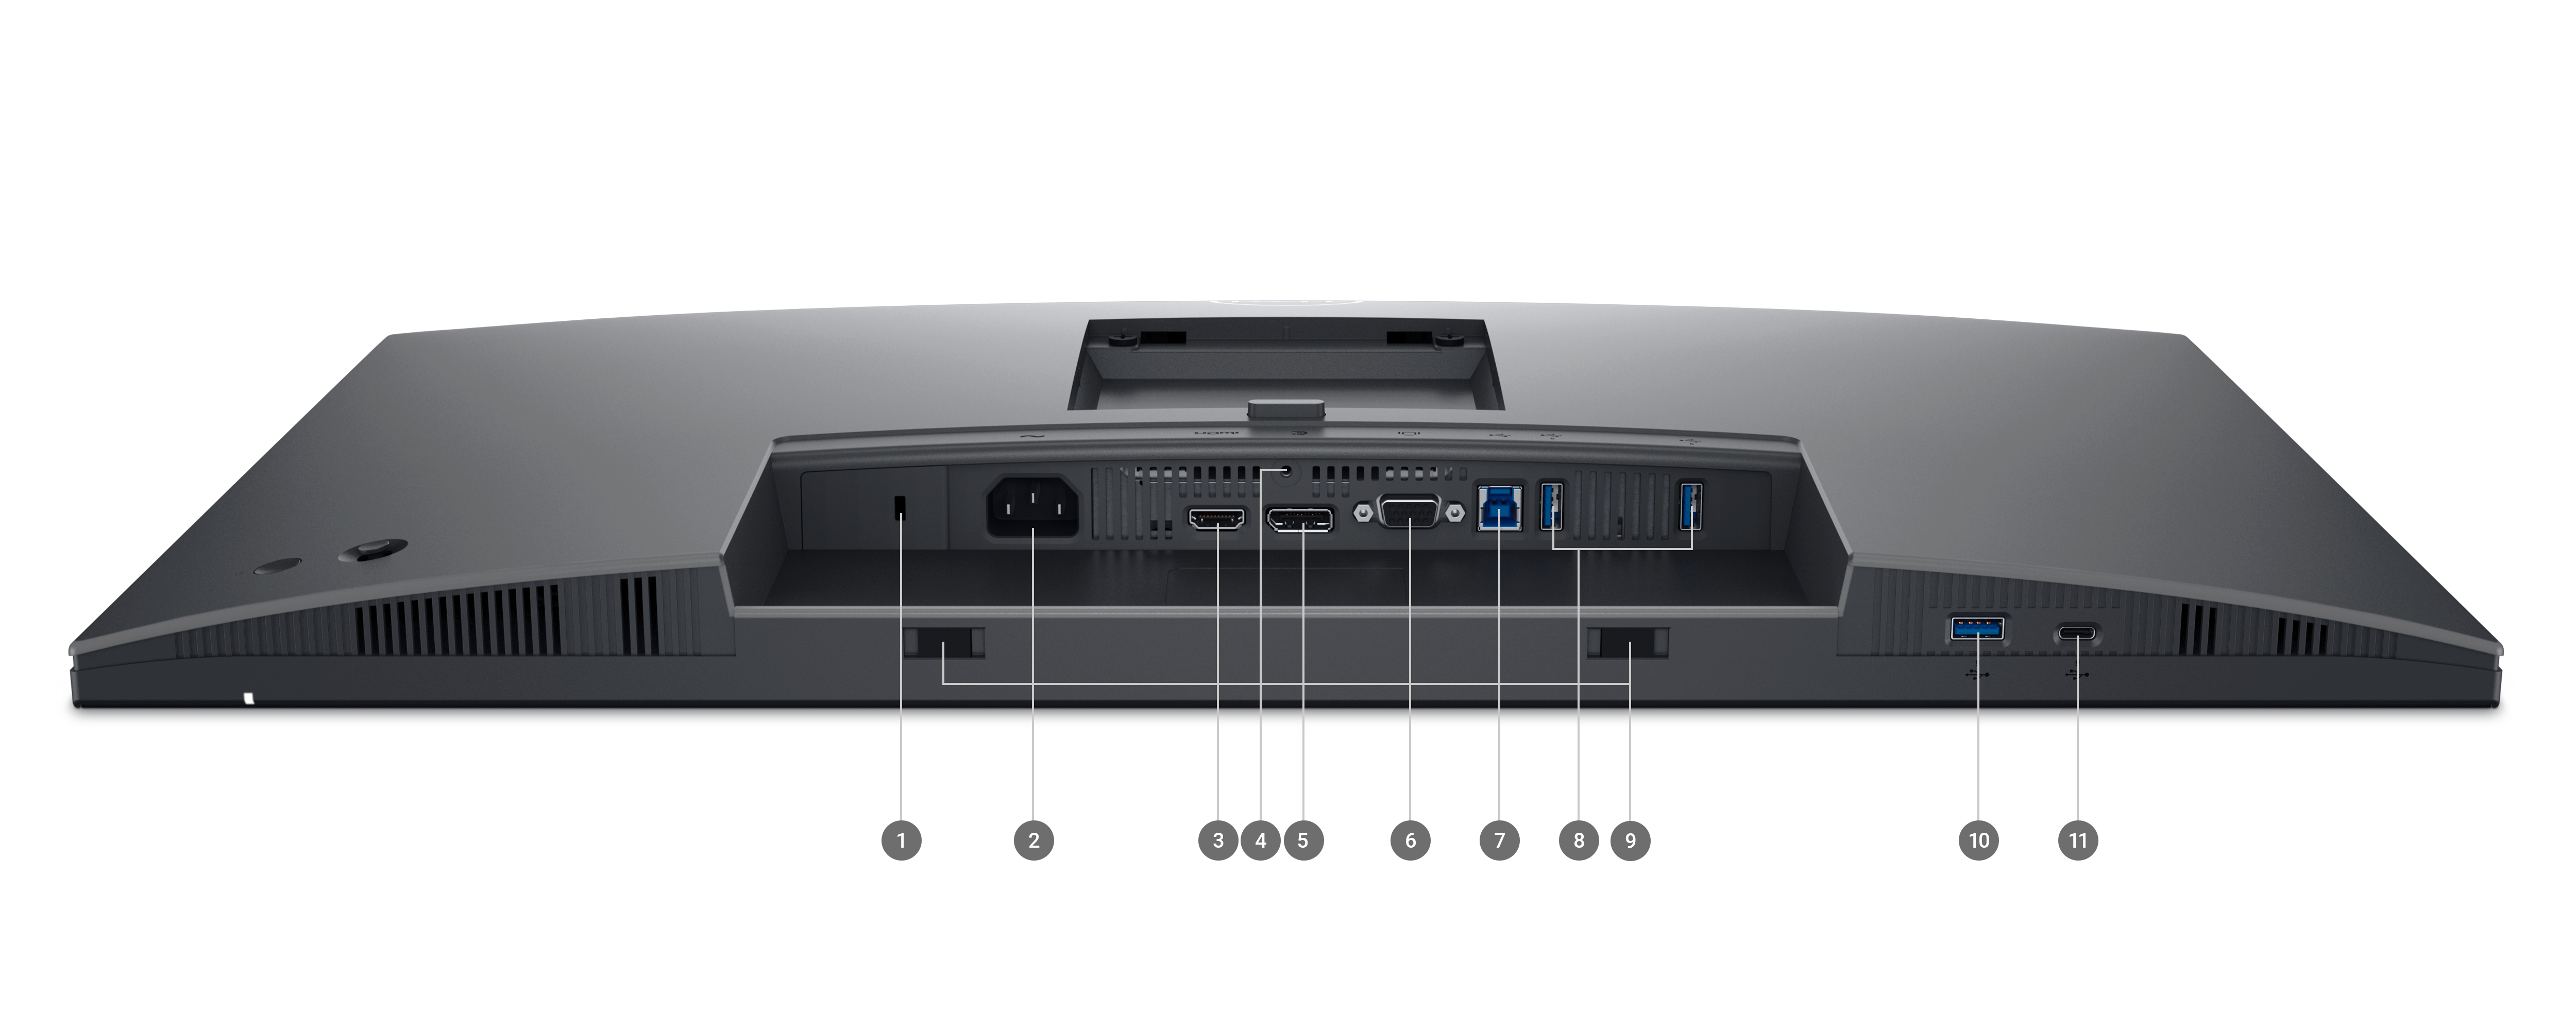 Monitor Dell serii P 2725H z obniżonym ekranem i numerami od 1 do 11 oznaczającymi dostępne porty i gniazda.